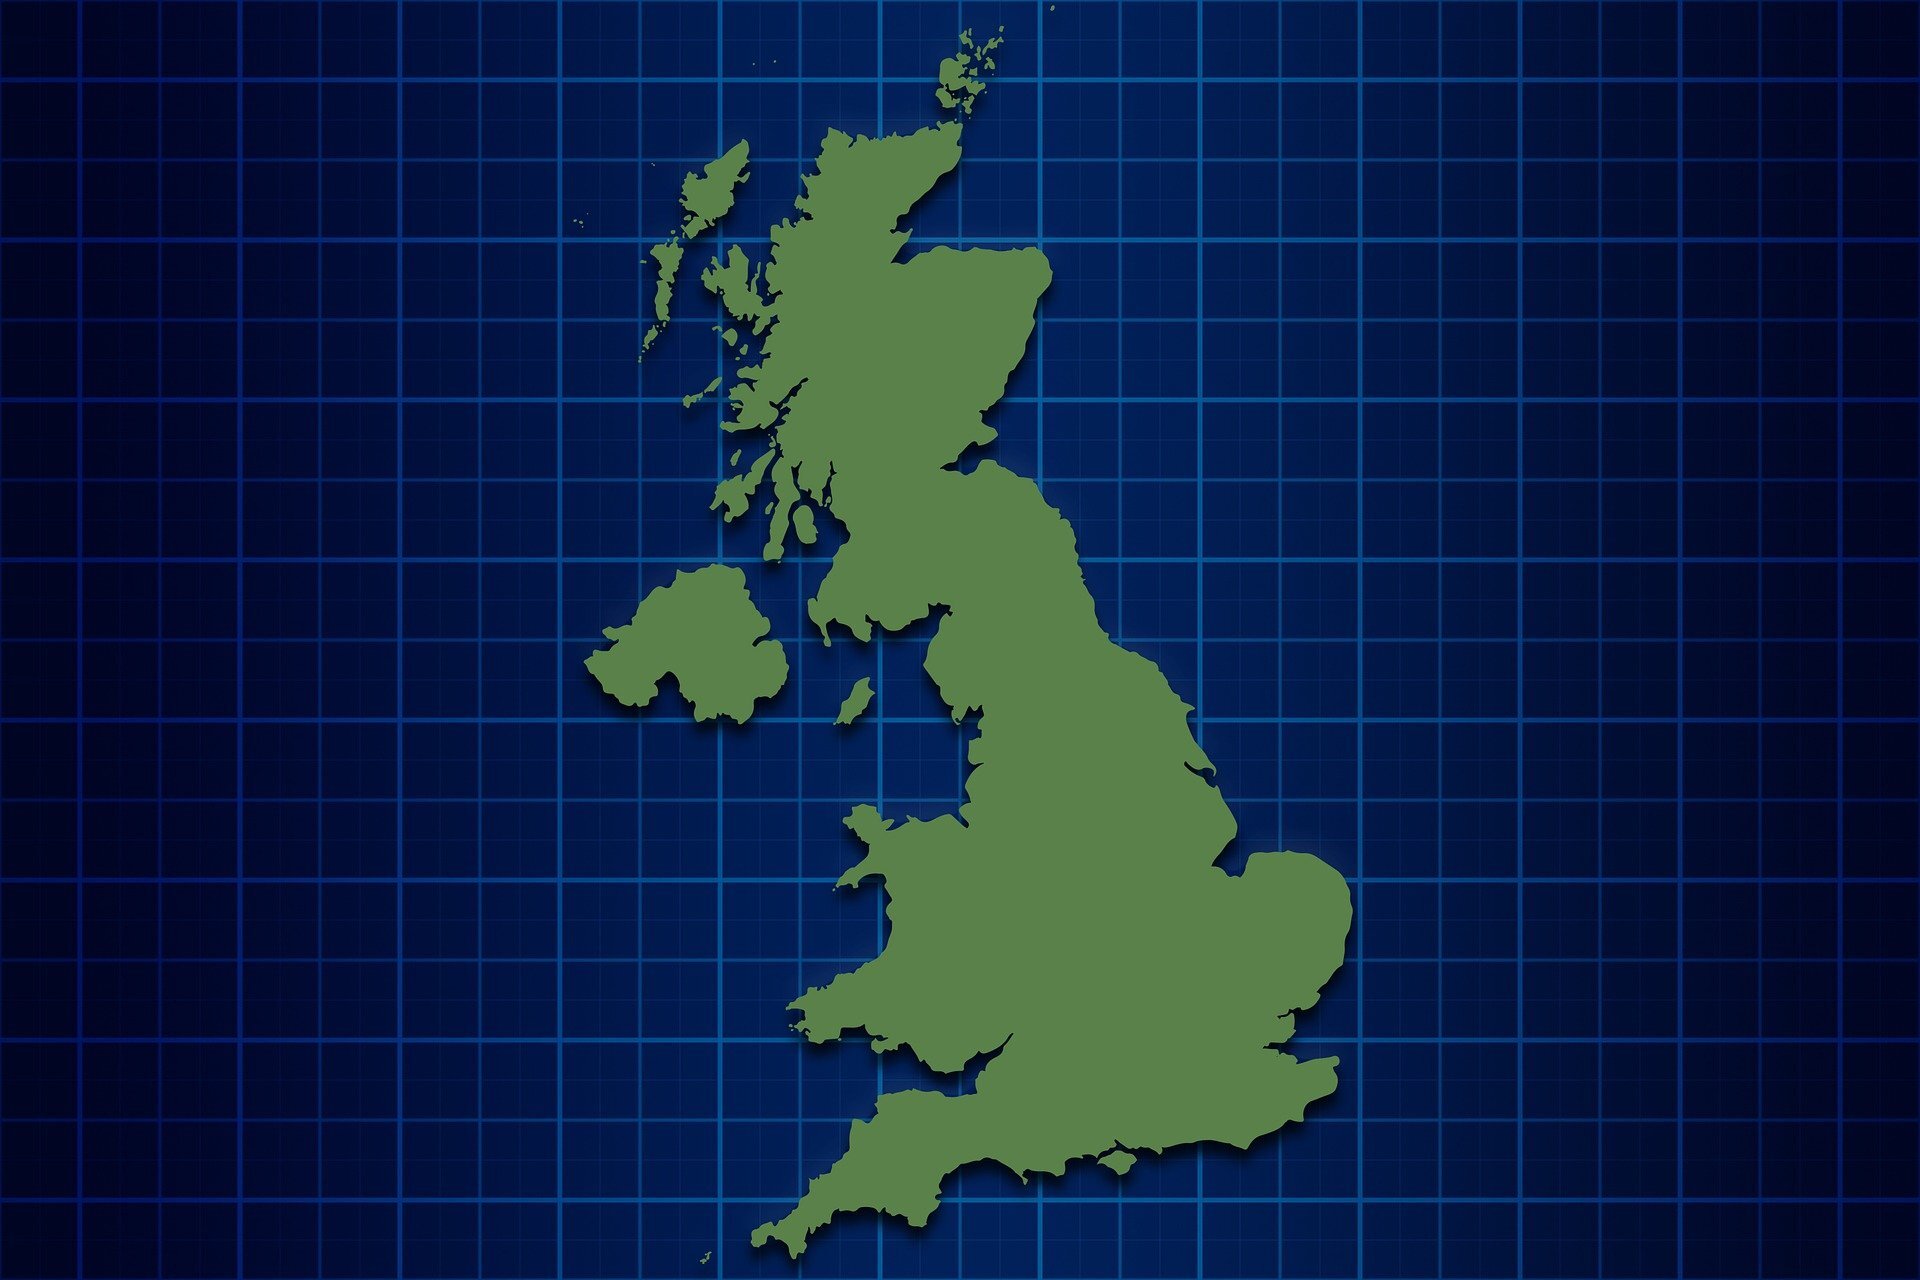 Uk territory. Остров Великобритания на карте. Остров Британия на карте. Британские острова на карте Англии. Великобритания карта географическая.